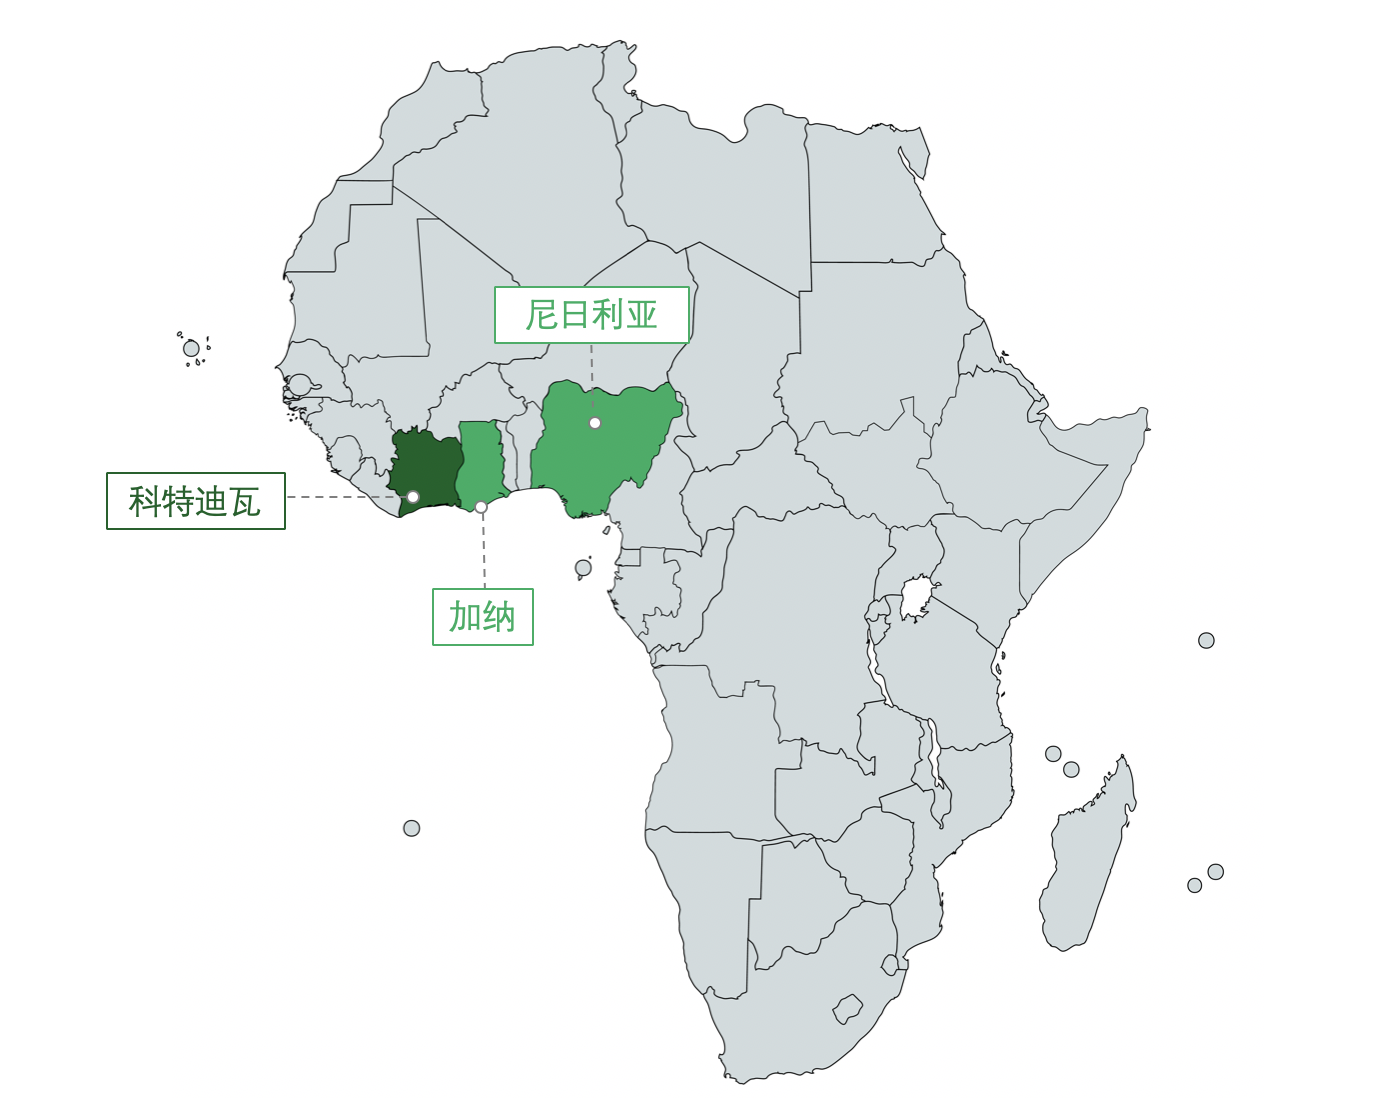 非洲十国创投市场调研报告之:(3)科特迪瓦